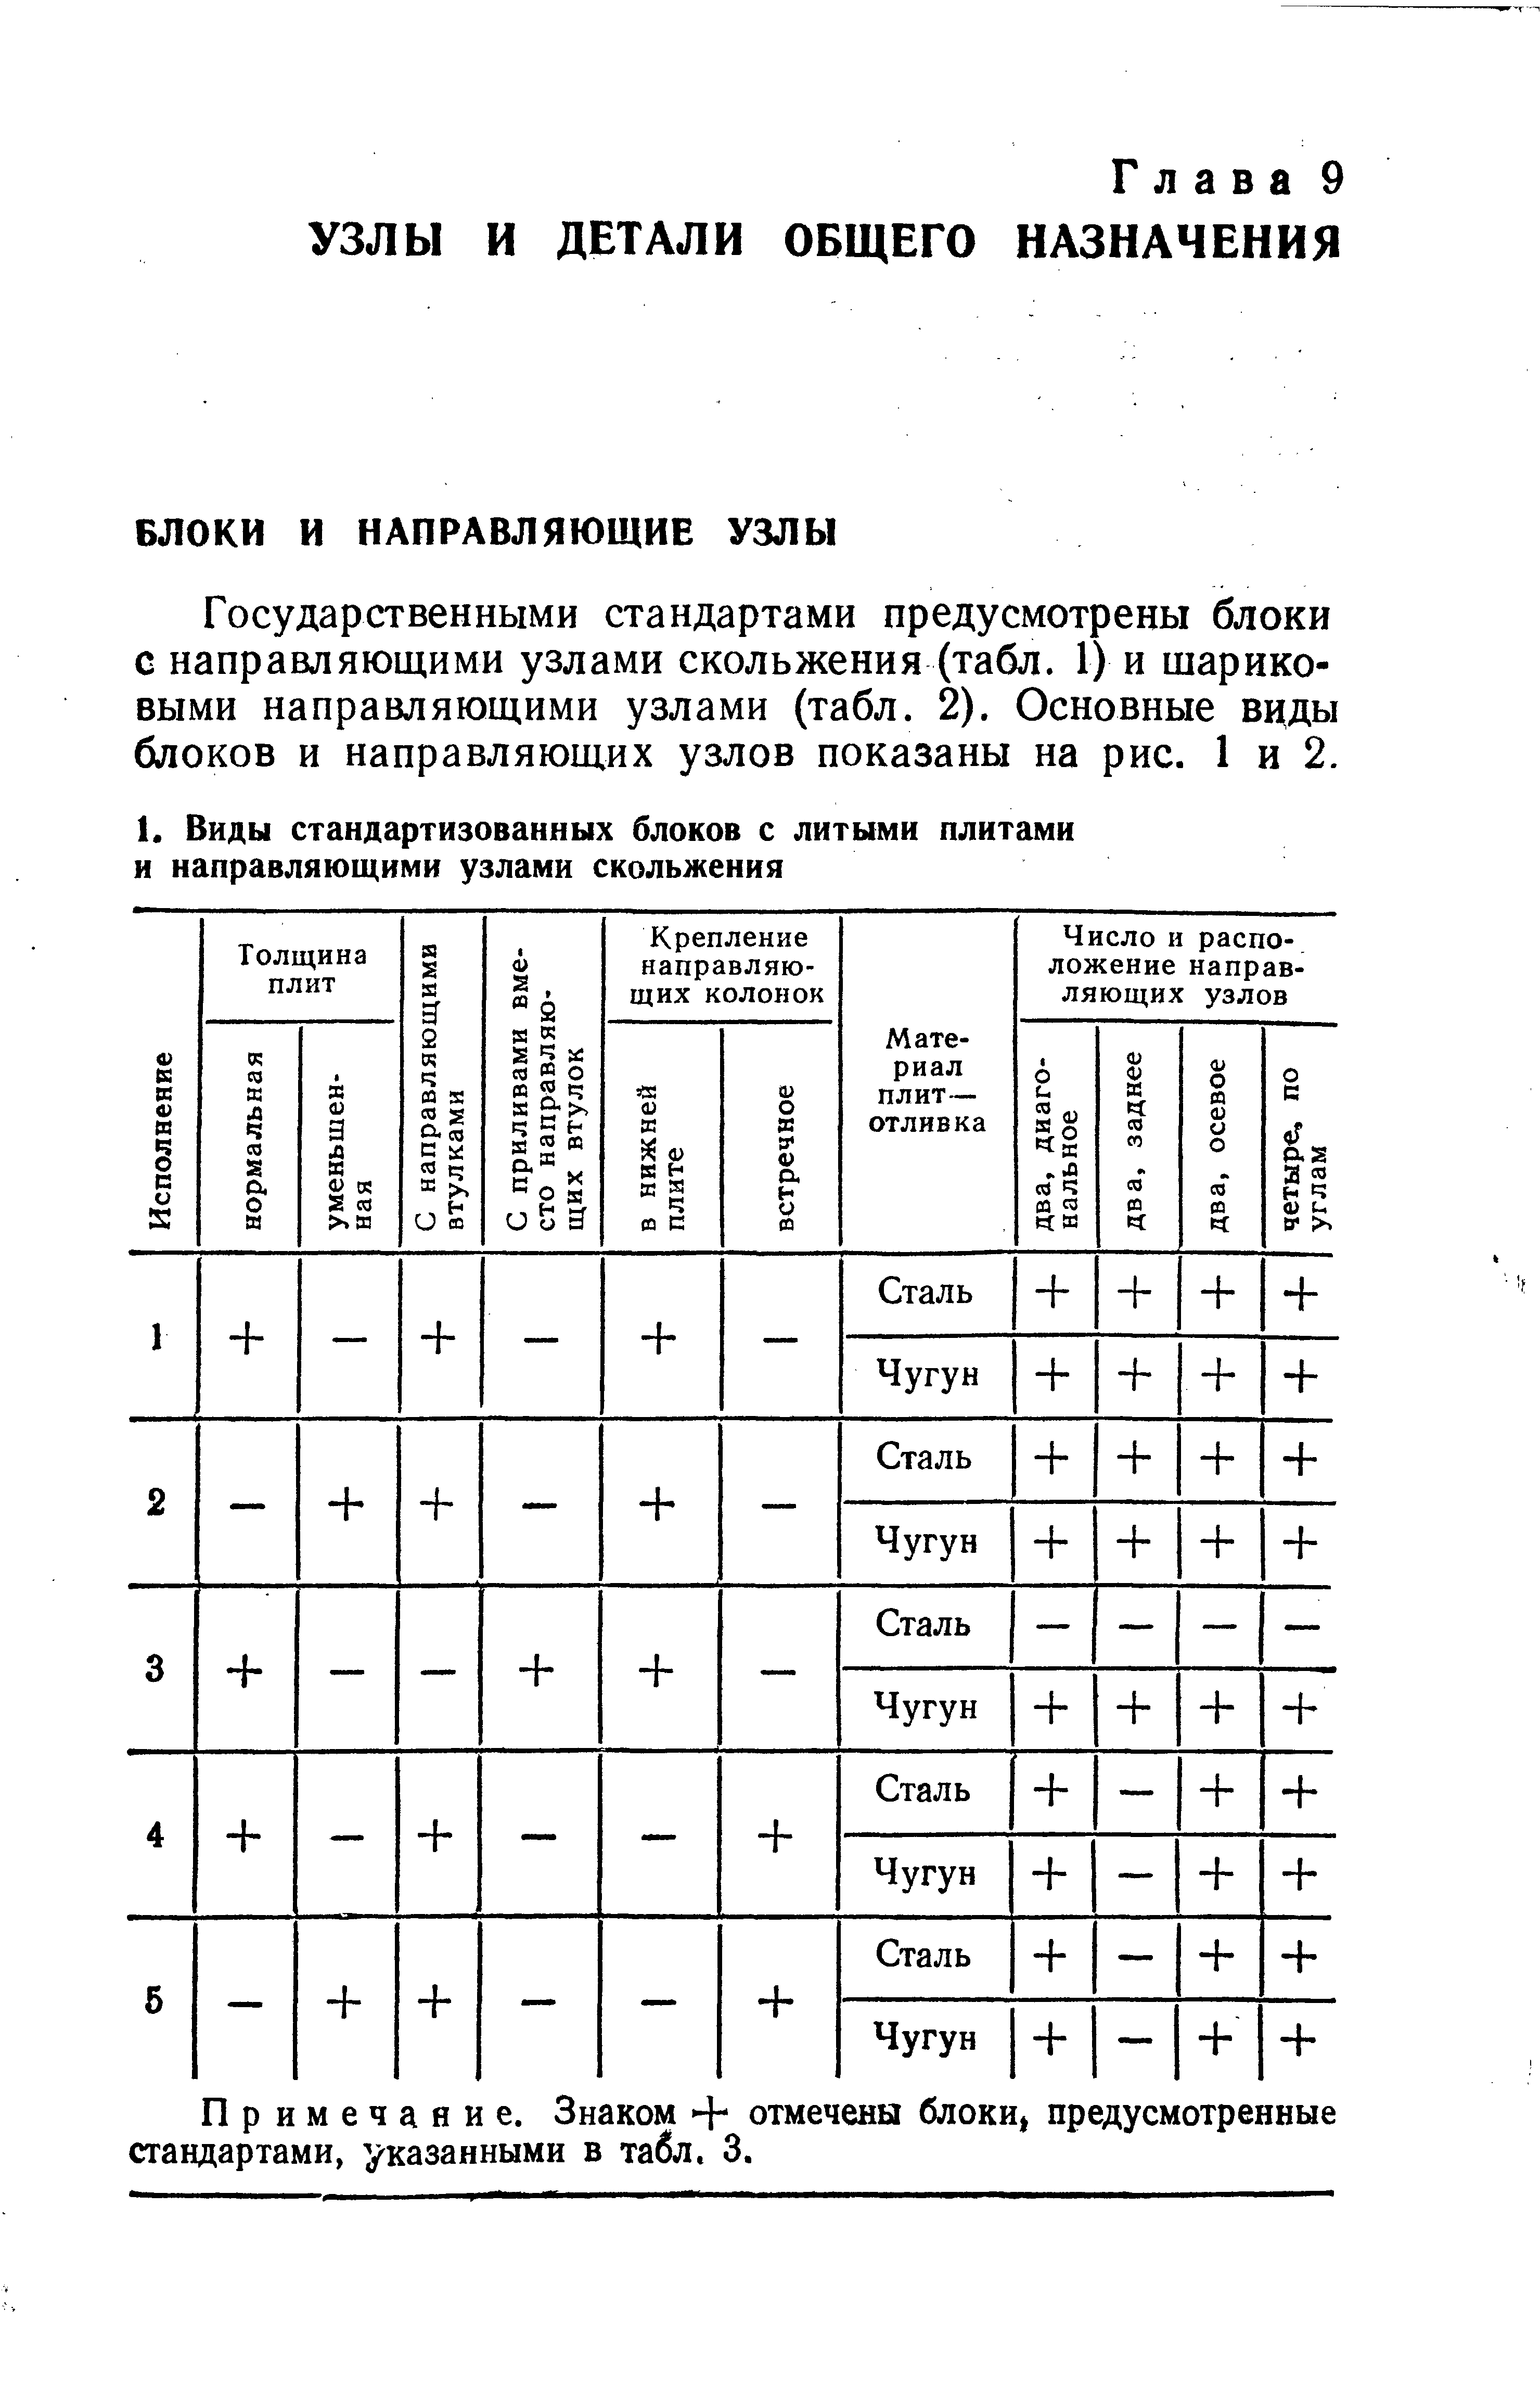 Государственными стандартами предусмотрены блоки с направляющими узлами скольжения (табл. 1) и шариковыми направляющими узлами (табл. 2). Основные виды блоков и направляющих узлов показаны на рис. 1 и 2.
